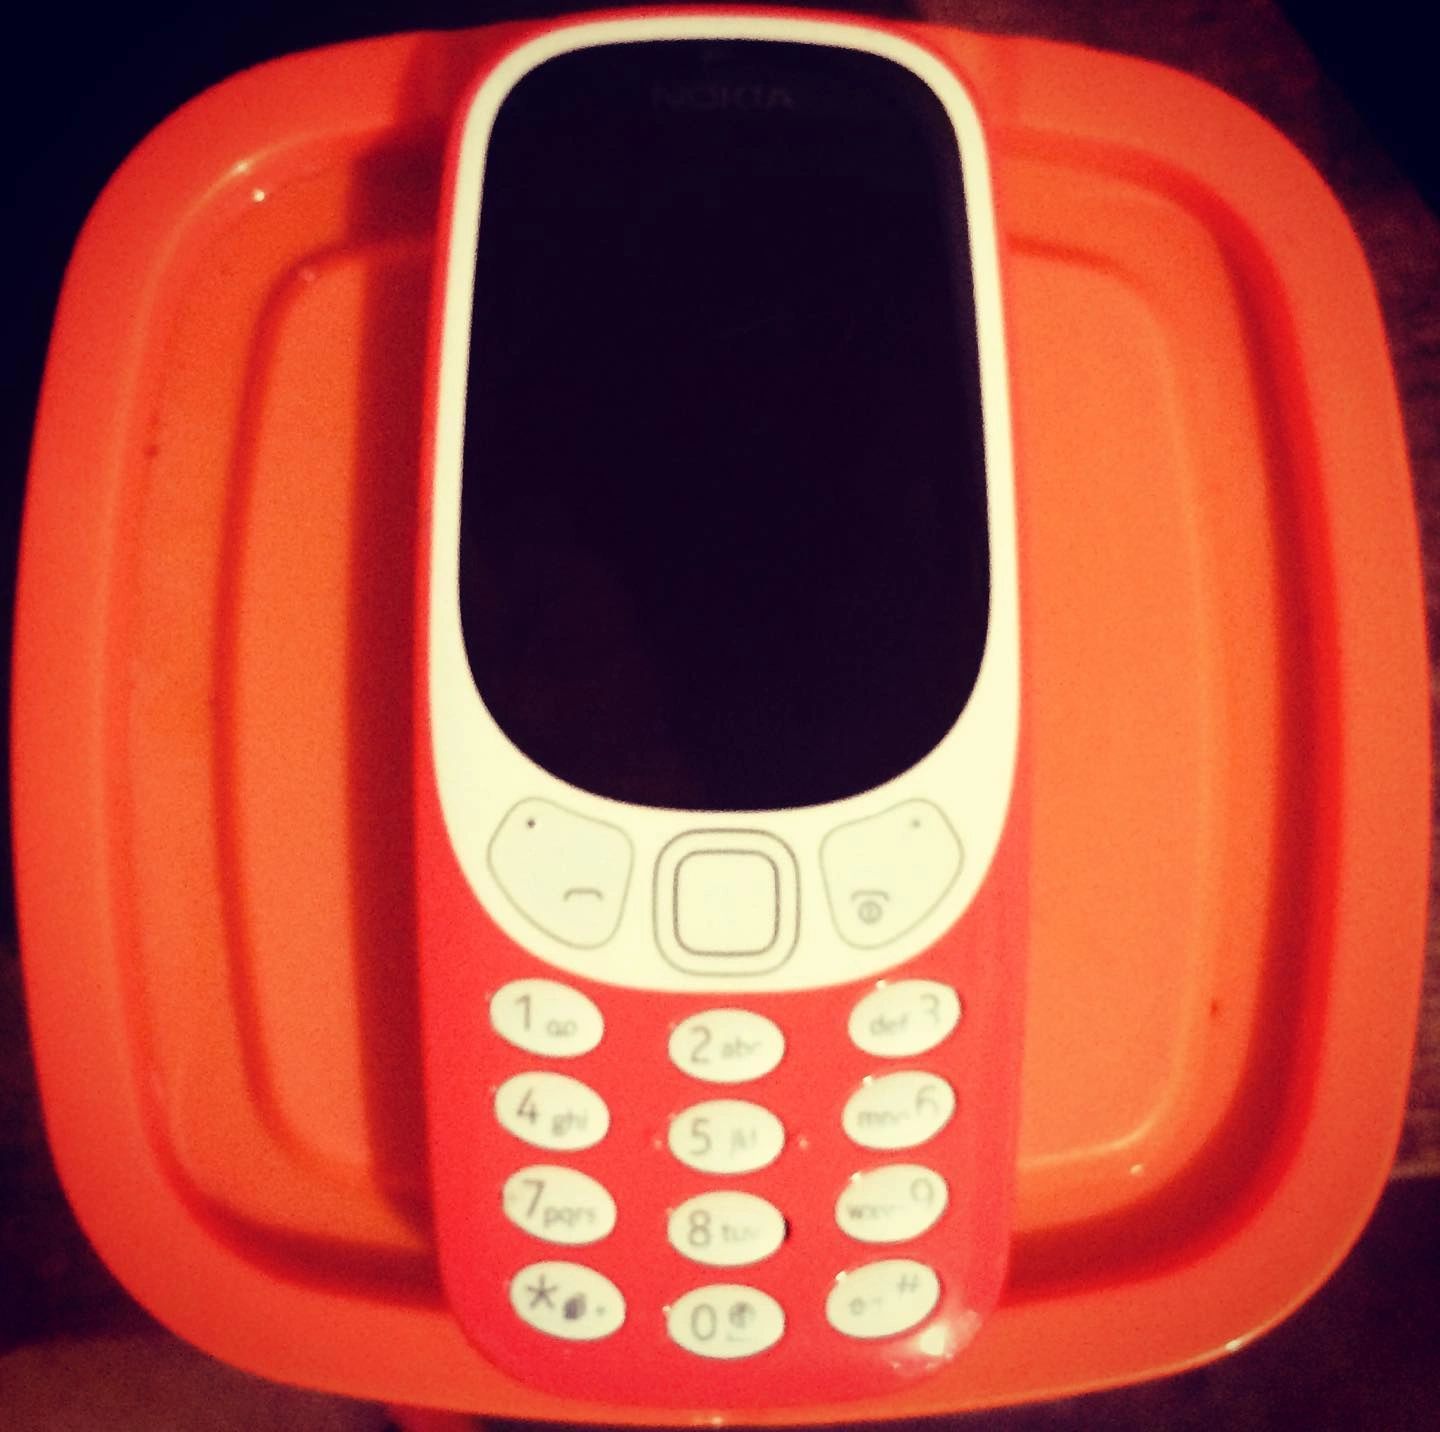 Nokia 3310 Remake